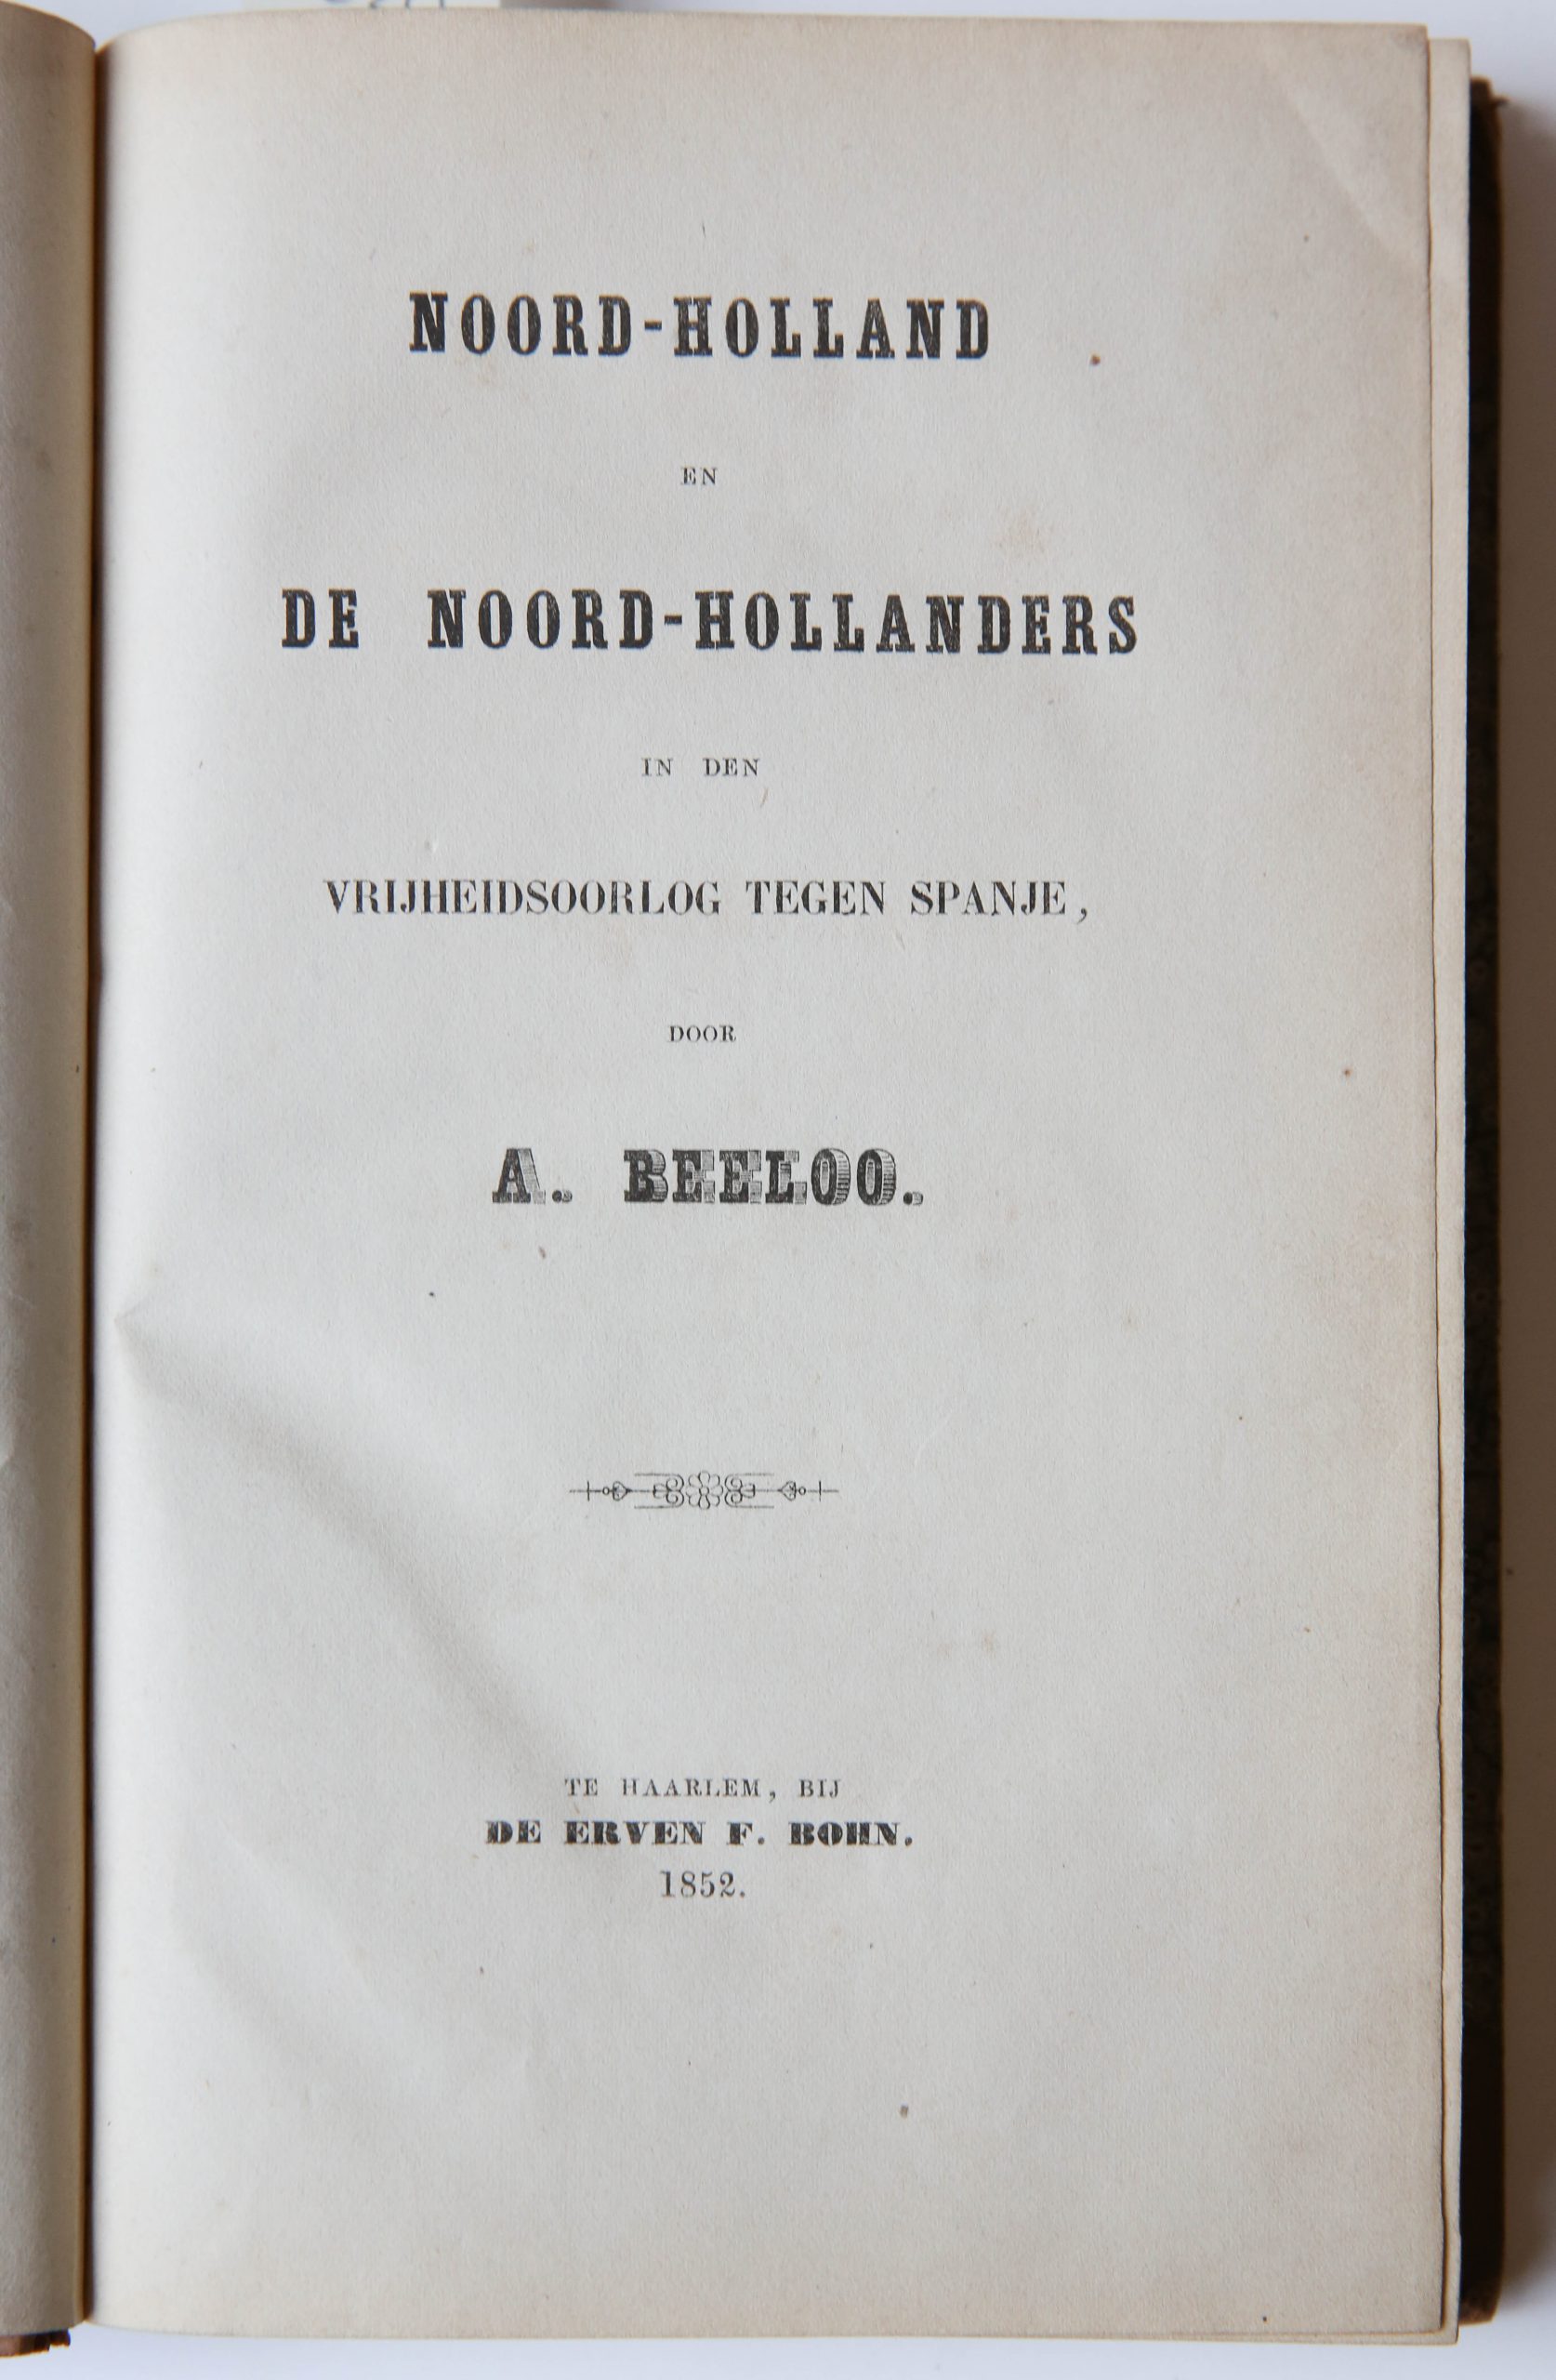 NOORD-HOLLAND en de NOORD-HOLLANDERS in den Vrijheidsoorlog tegen Spanje, Erven F. Böhn Haarlem 1852, 400 pp. Half leather binding, good copy.